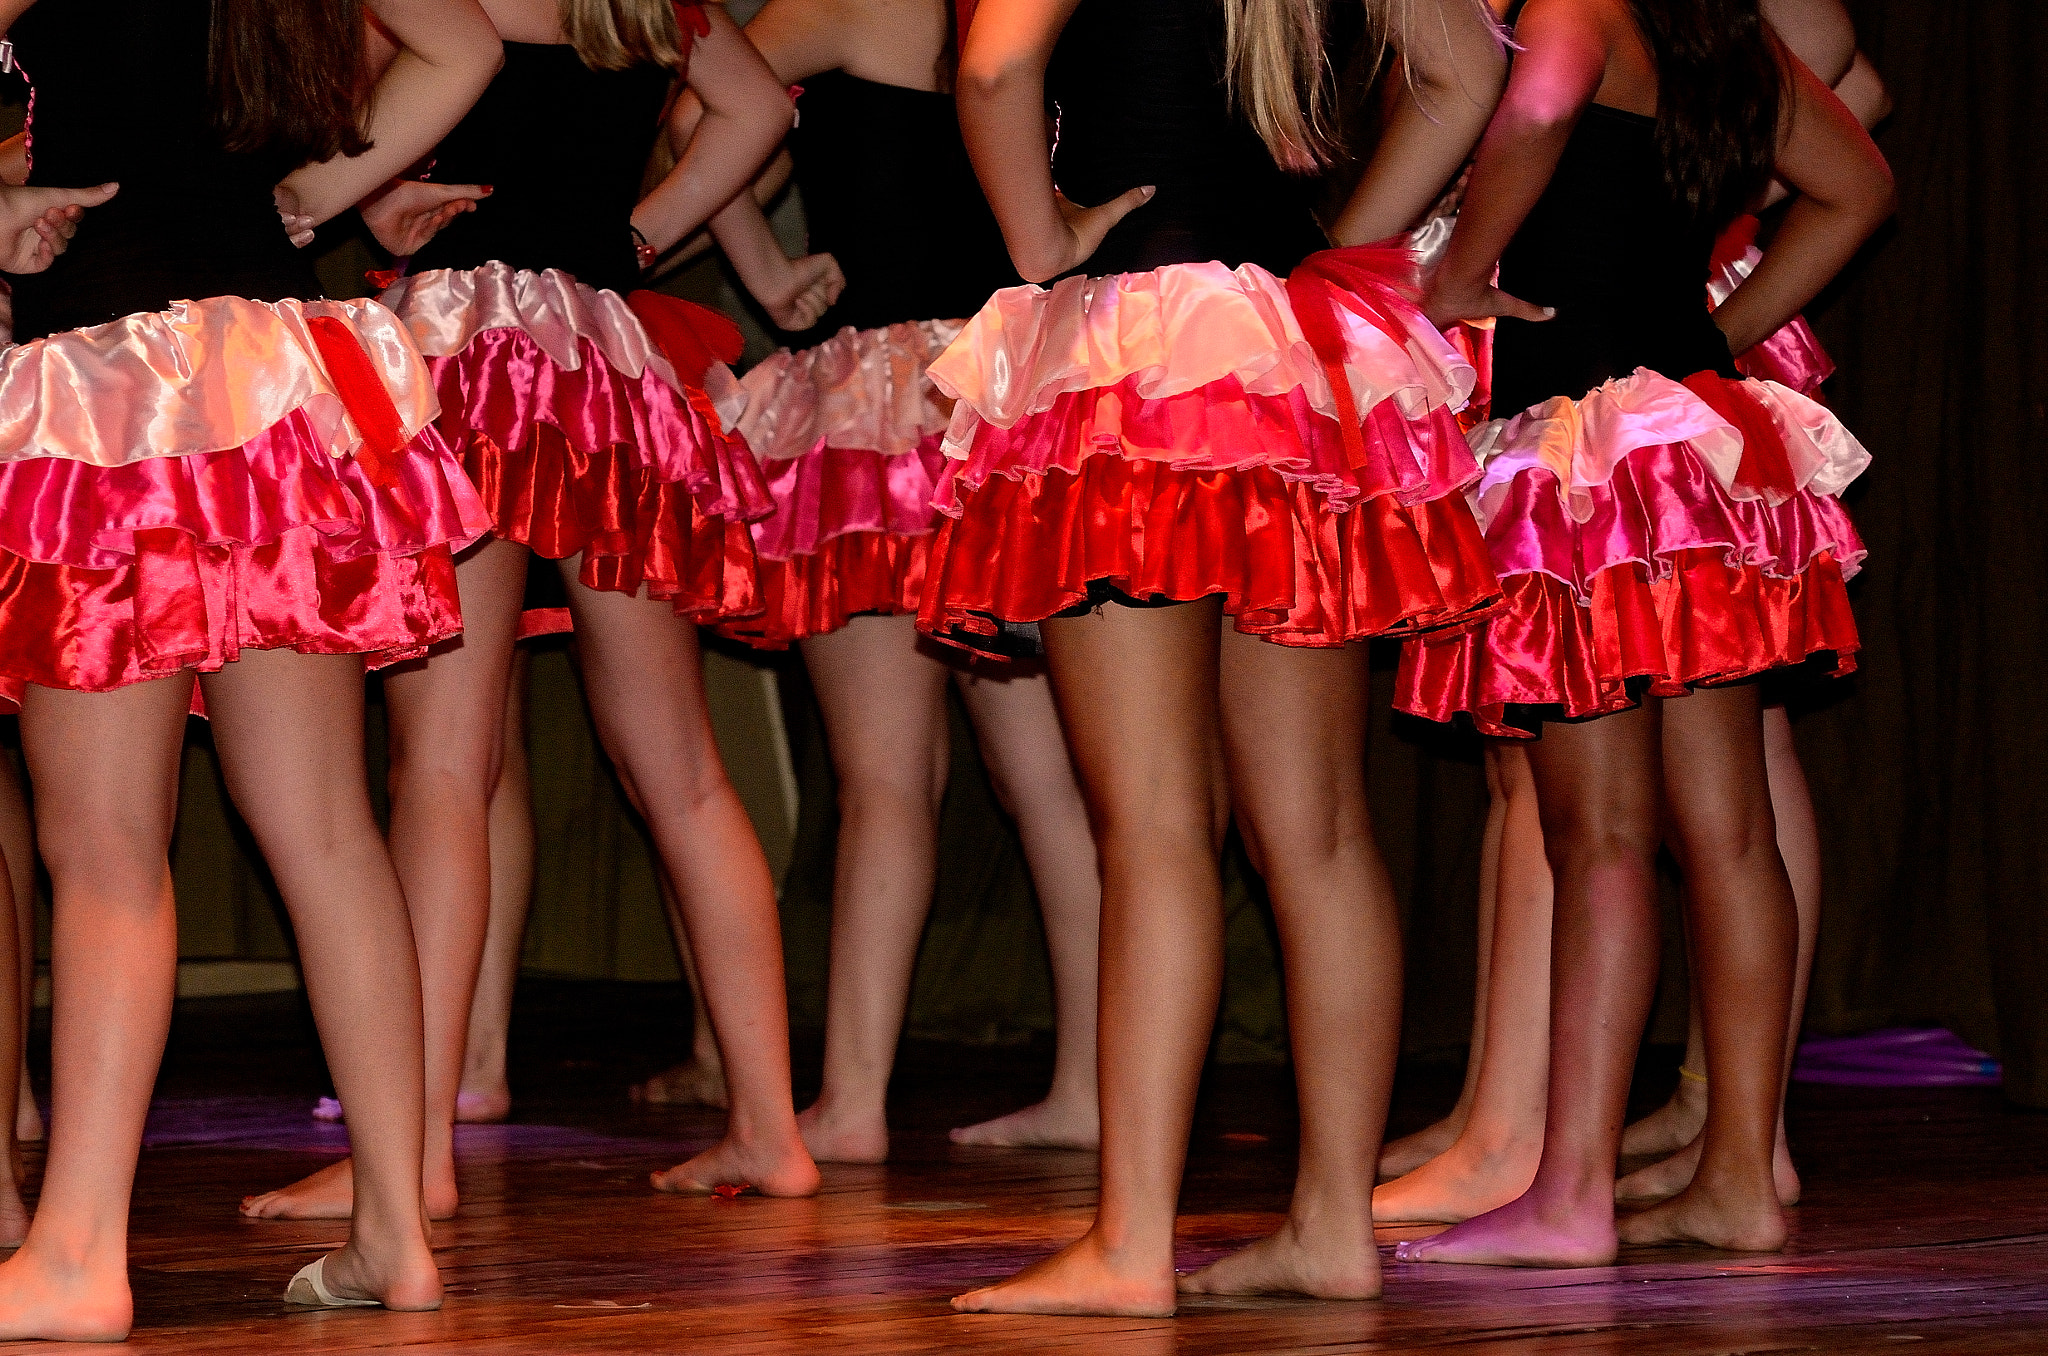 AF Nikkor 70-210mm f/4-5.6 sample photo. Girls dancing photography